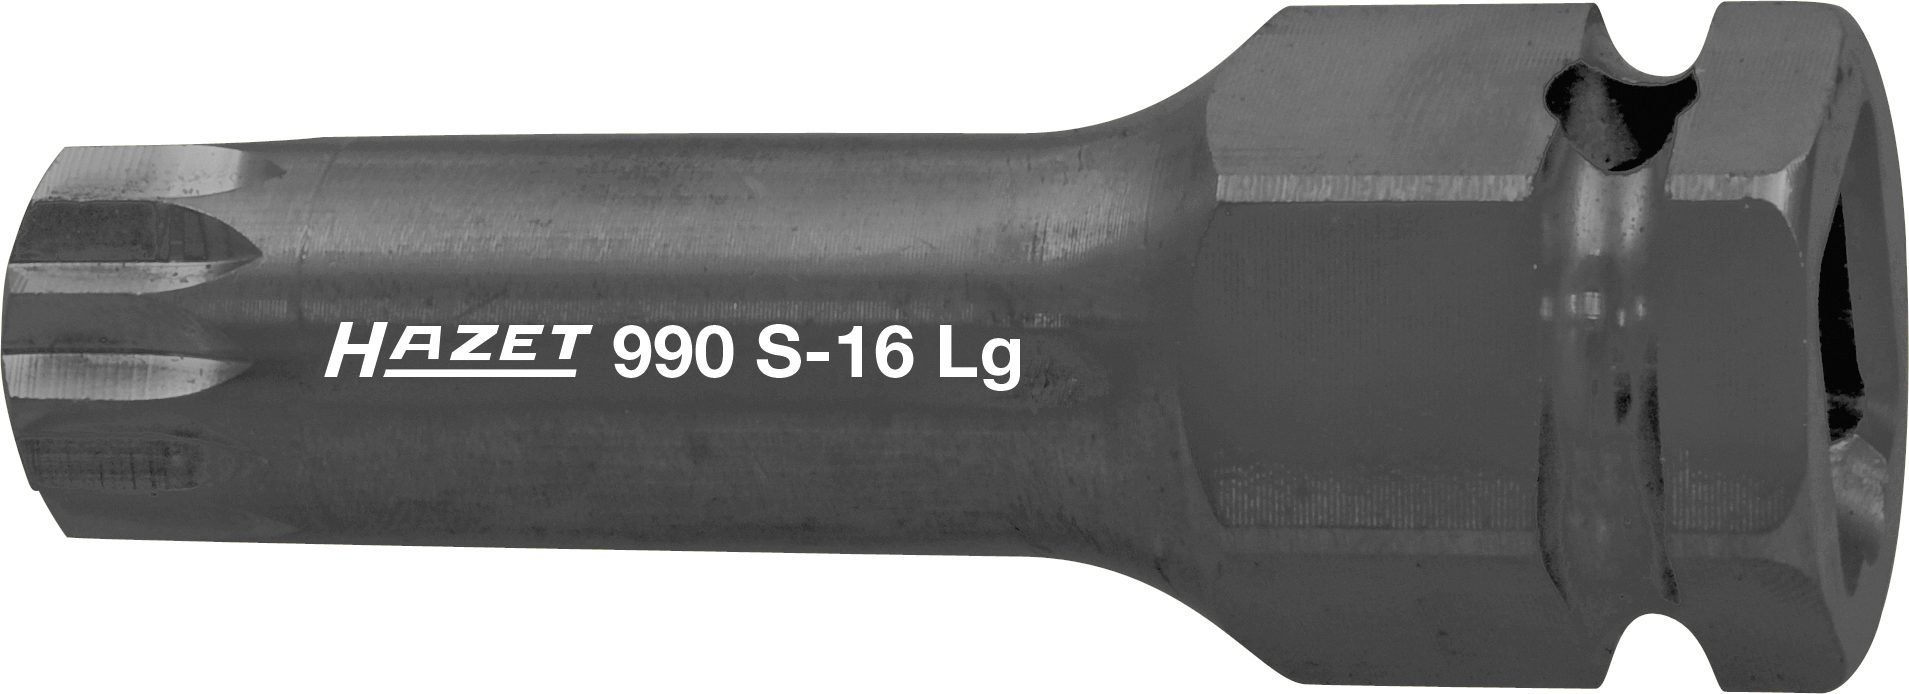 HAZET Kraft-Schraubendr.-Einsatz, 990S-18LG Hazet Steckschlüssel